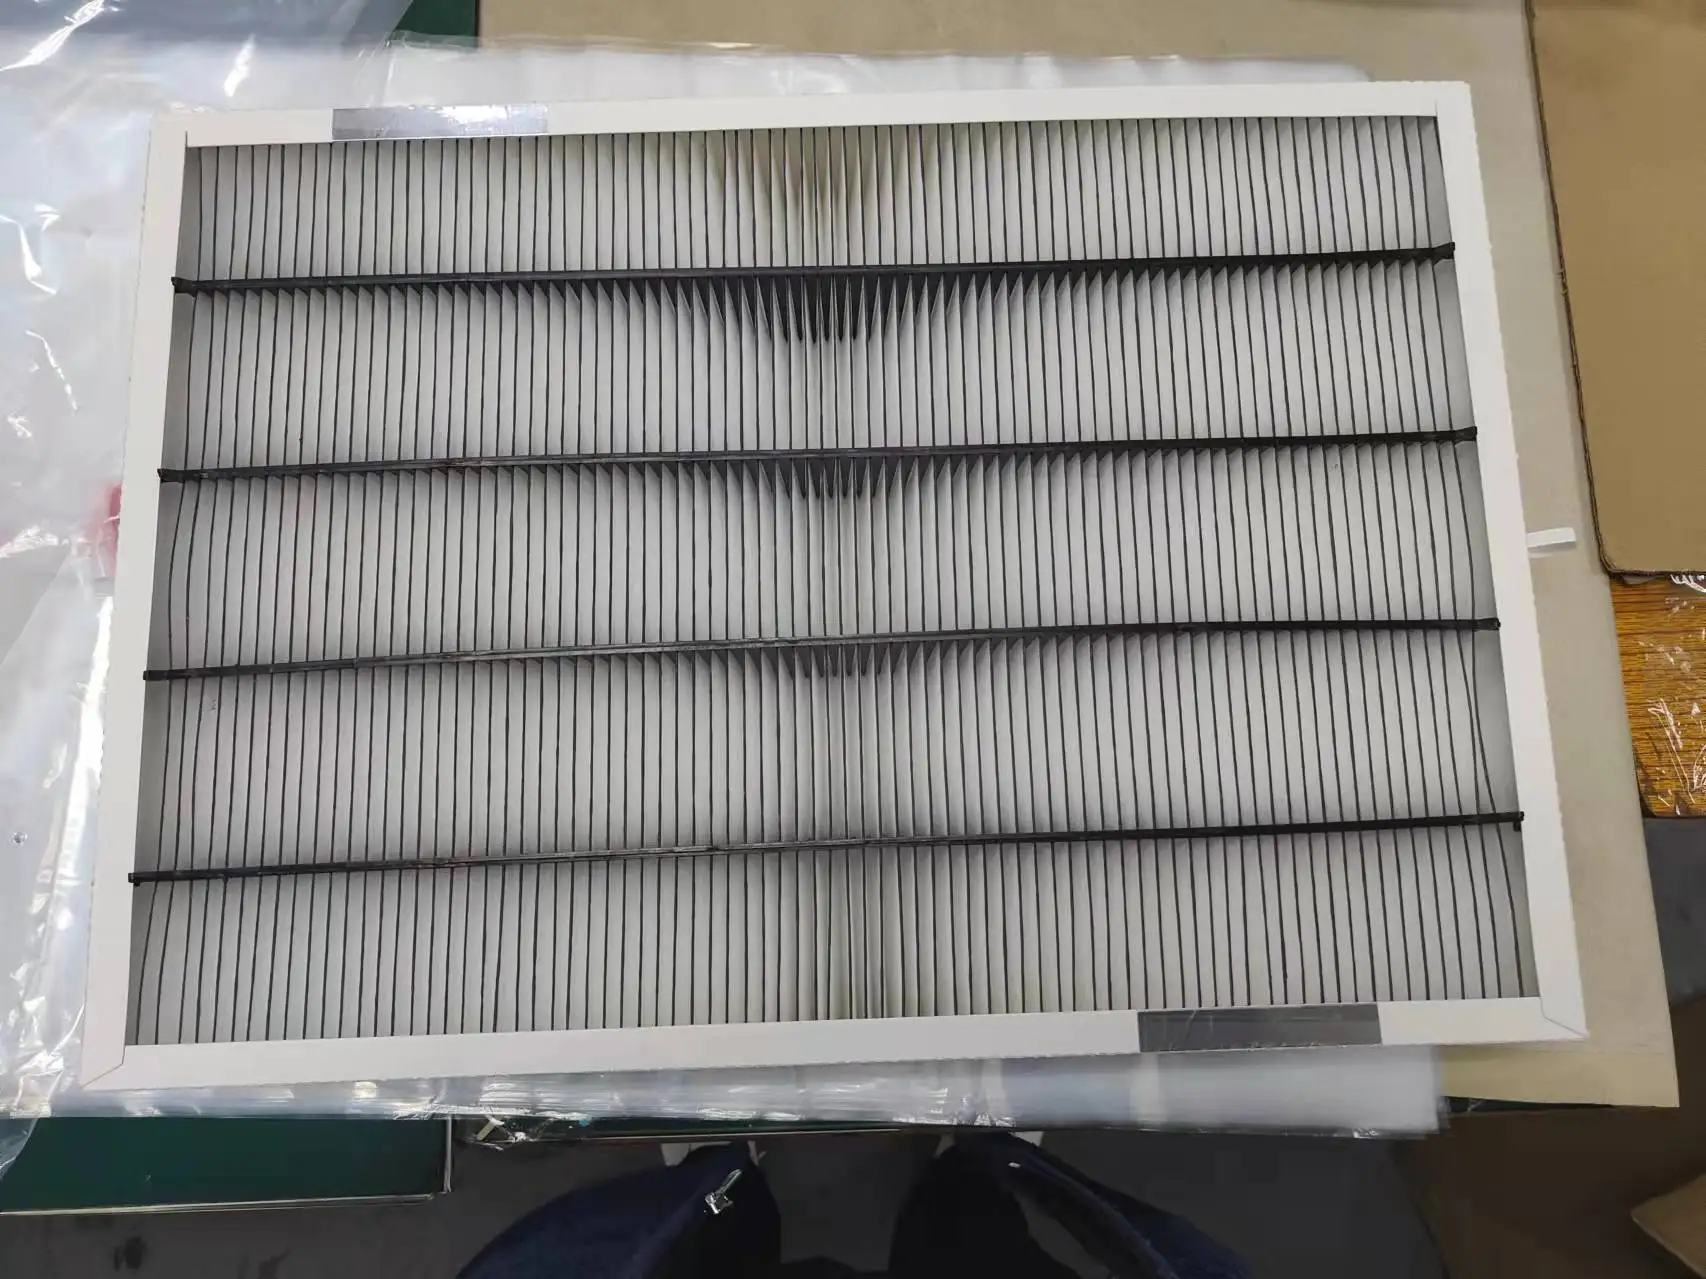 Сменный фильтр воздуха GAPAAXCC1625 MERV 15, совместимый с очистителем воздуха с Брайантом/несущим числом Infinity 16x25 дюймов